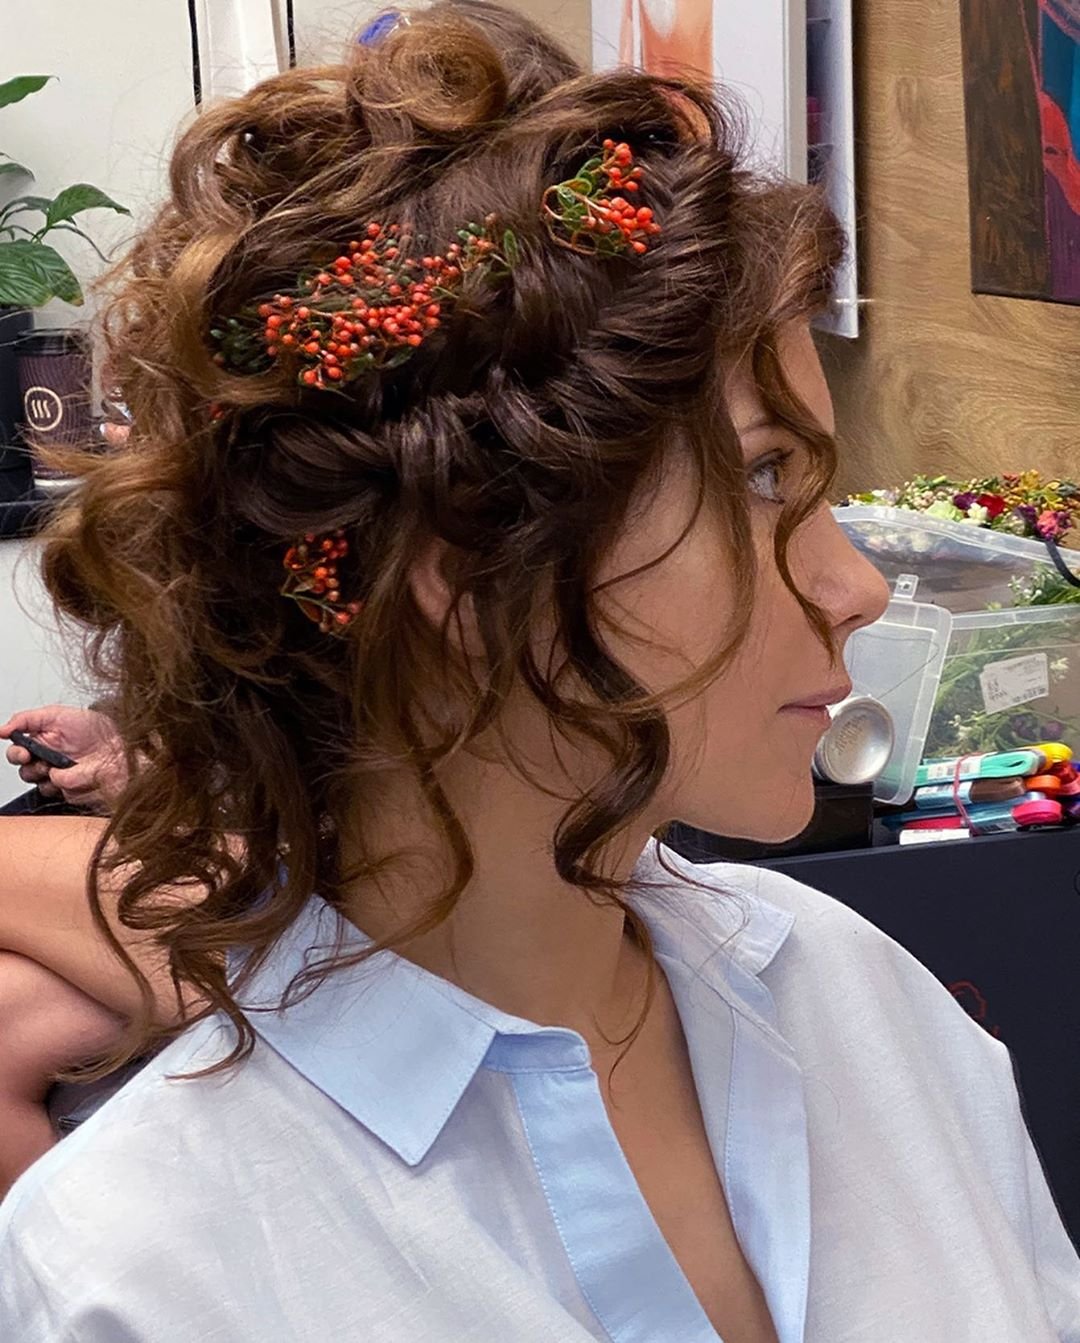 Екатерина Климова показала причёску с веточками рябины в волосах